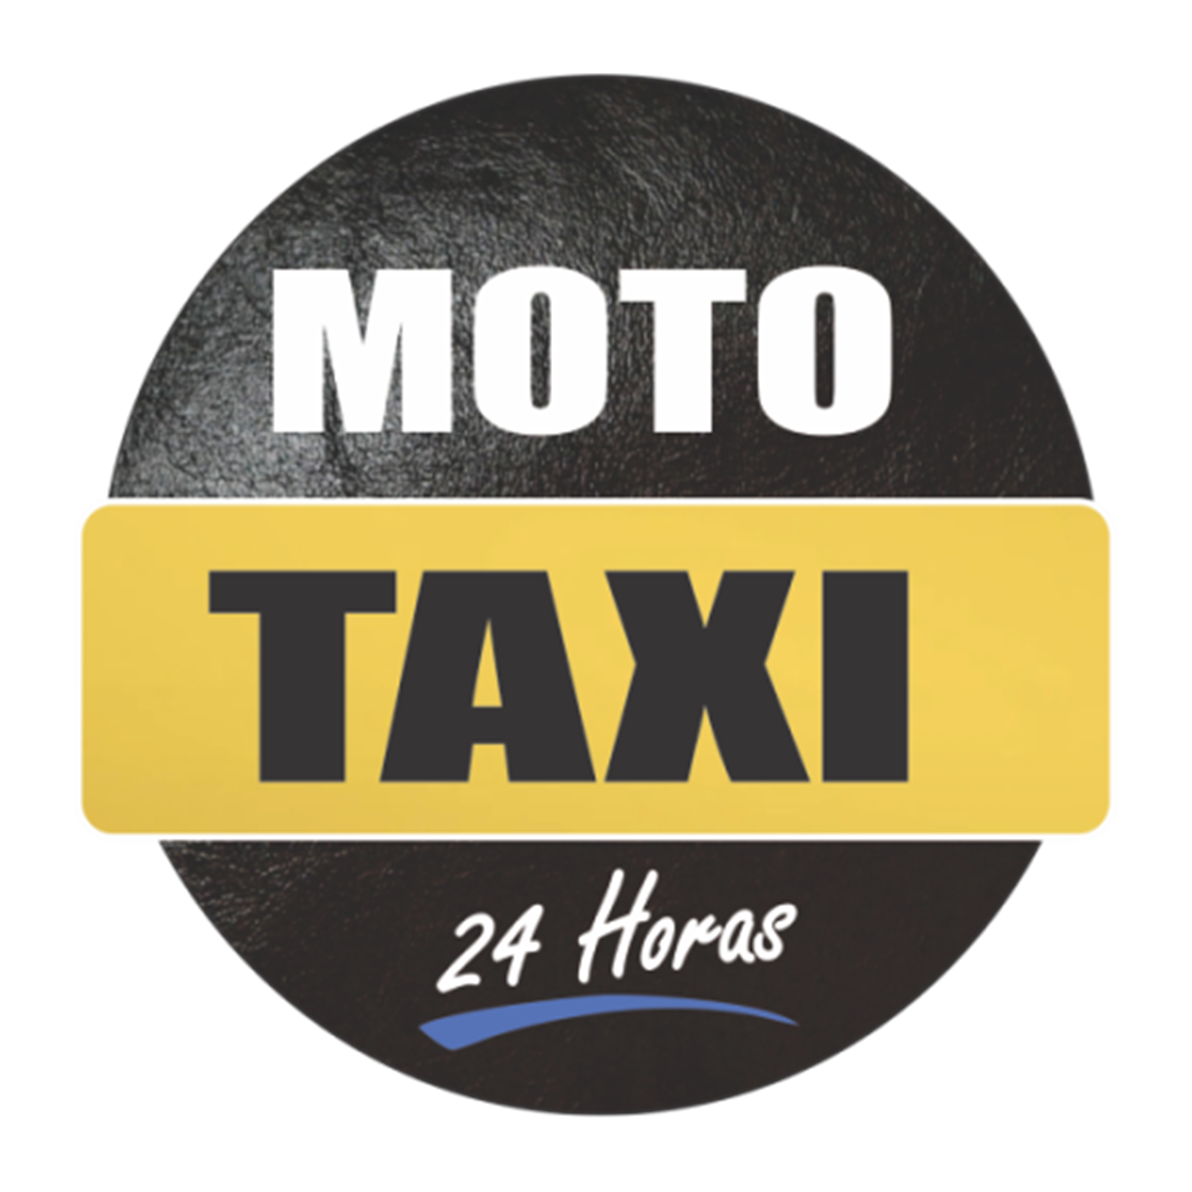 Marcelo Moto Táxi - 24 Horas, Barretos, SP | Cliquei Achei